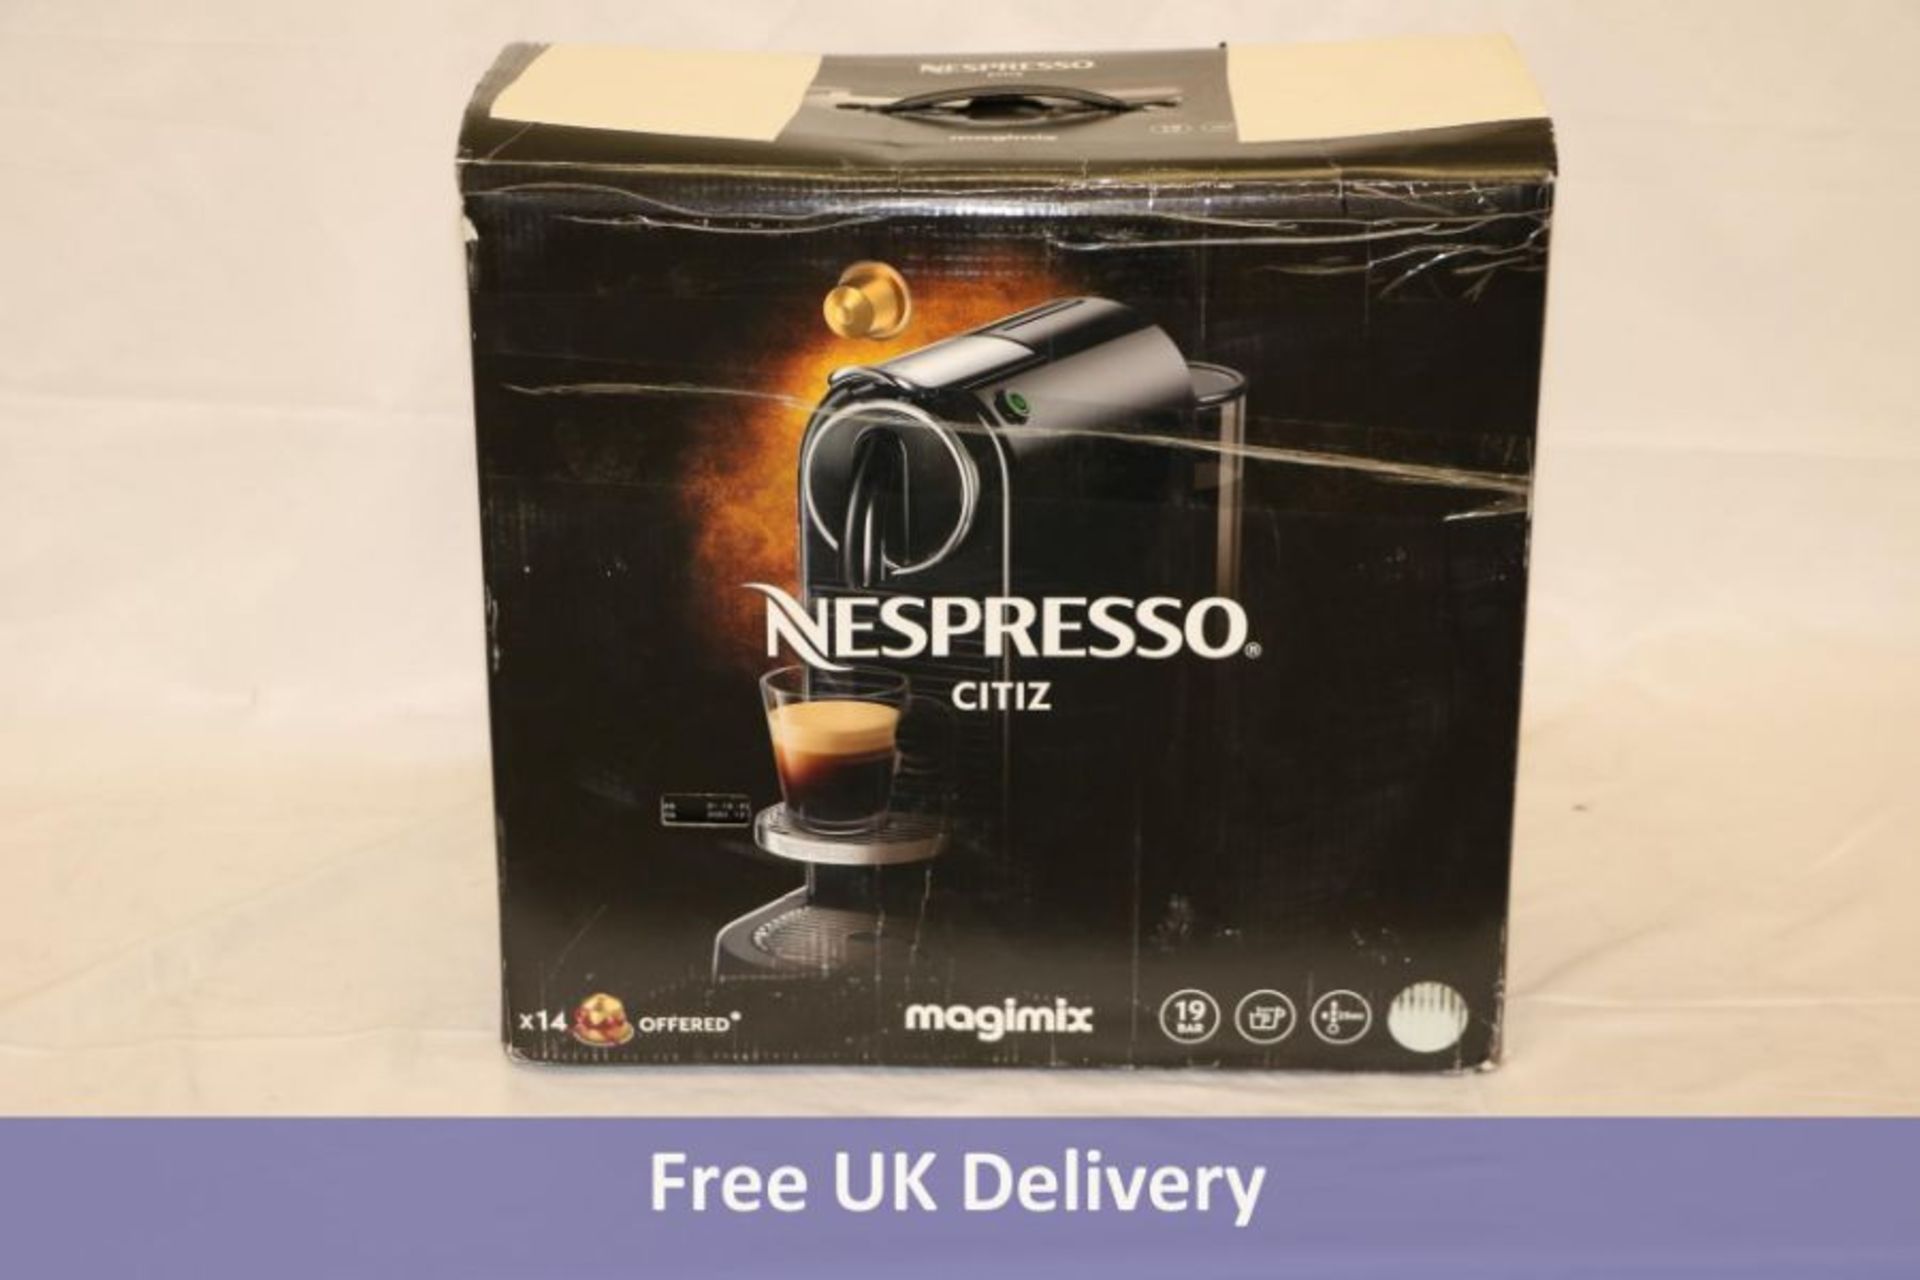 Magimix Nespresso Citiz Coffee Maker, White